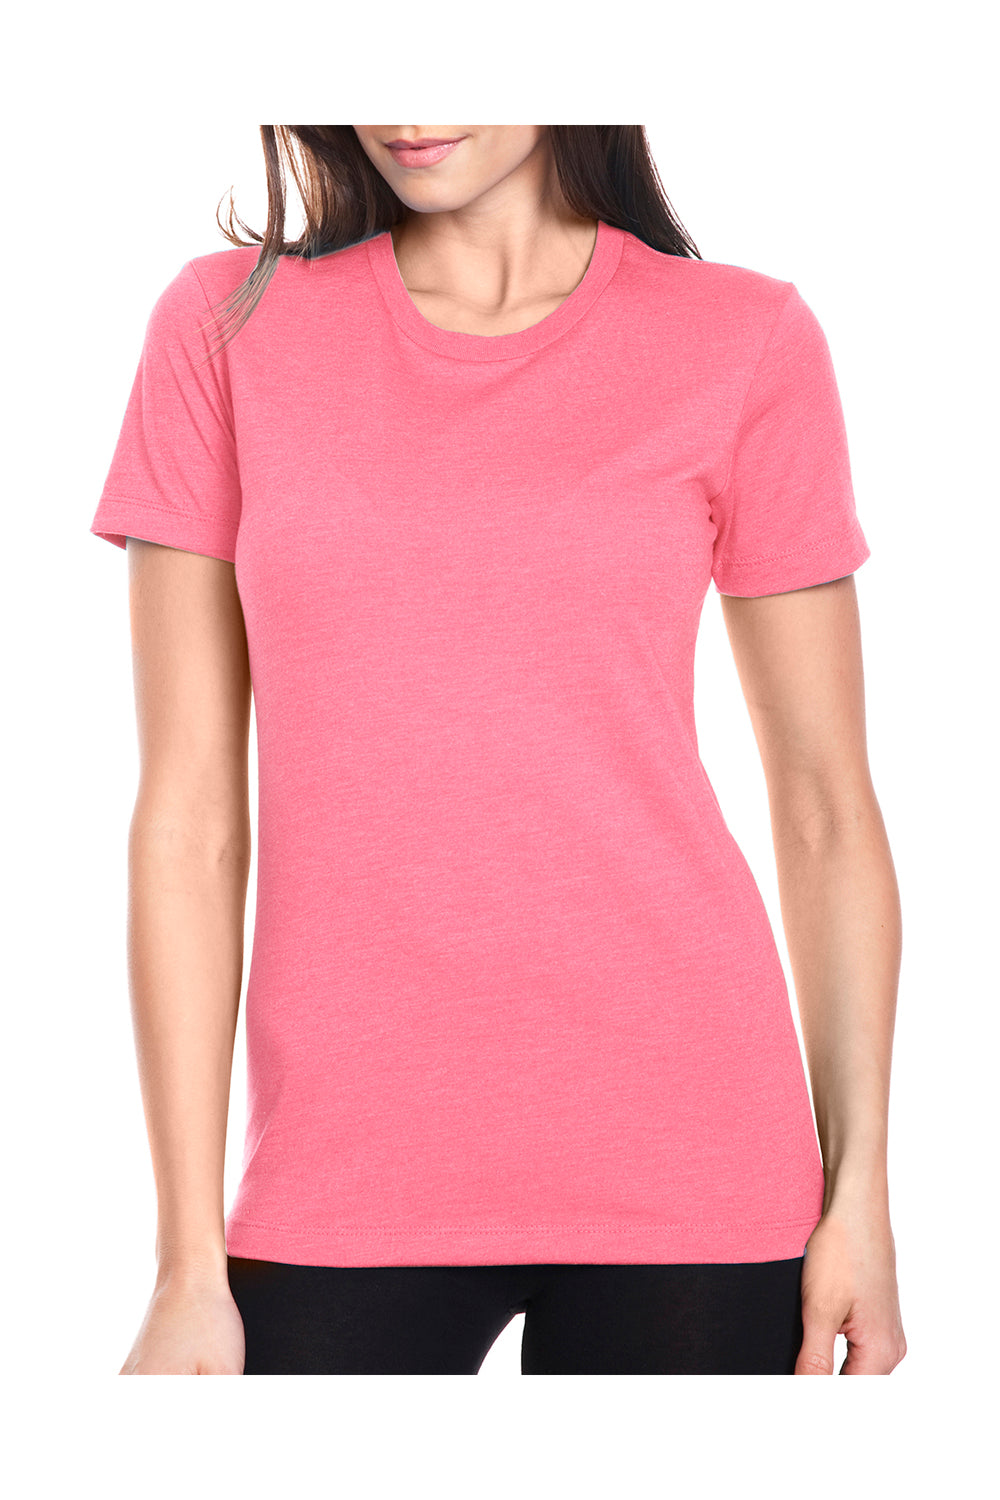 Next Level 6610 Womens CVC Jersey Short Sleeve Crewneck T-Shirt Hot Pink Front